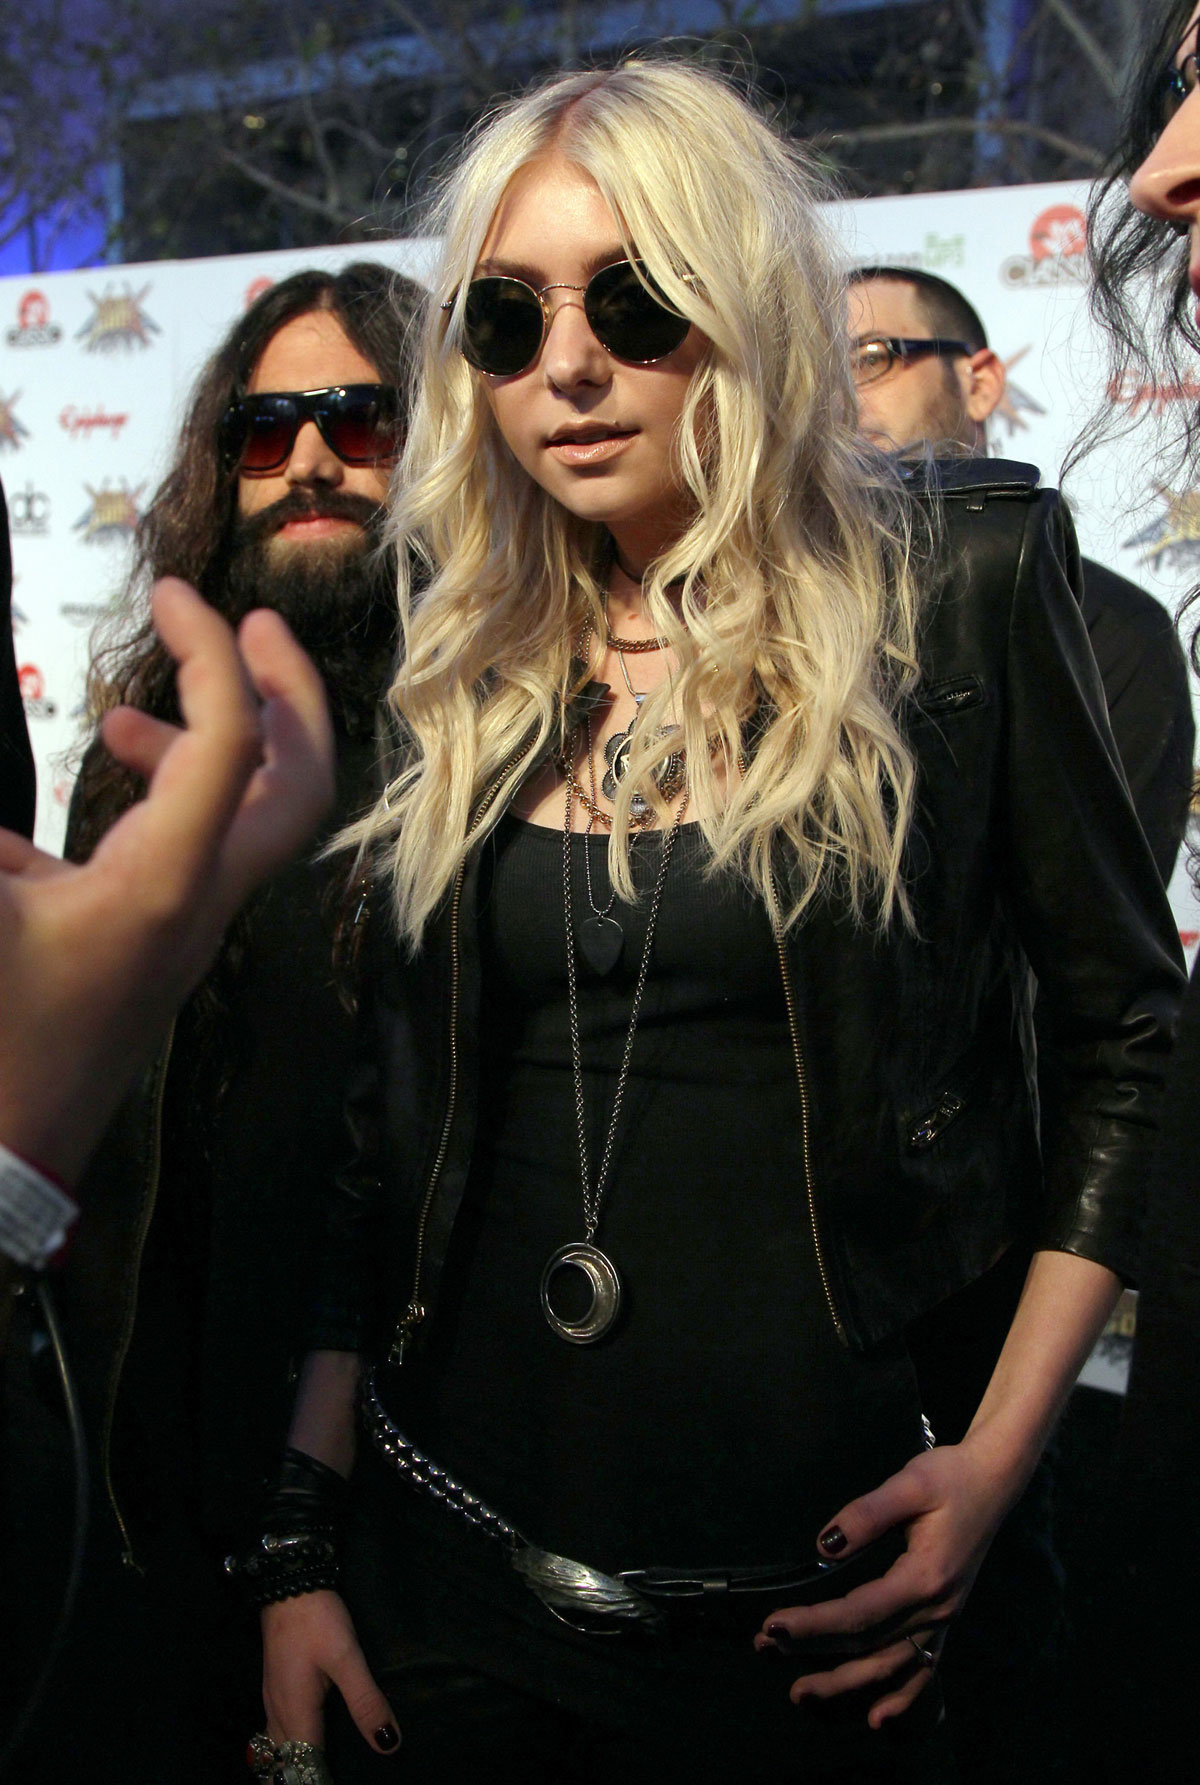 Taylor Momsen attends 2014 Revolver Golden Gods Awards